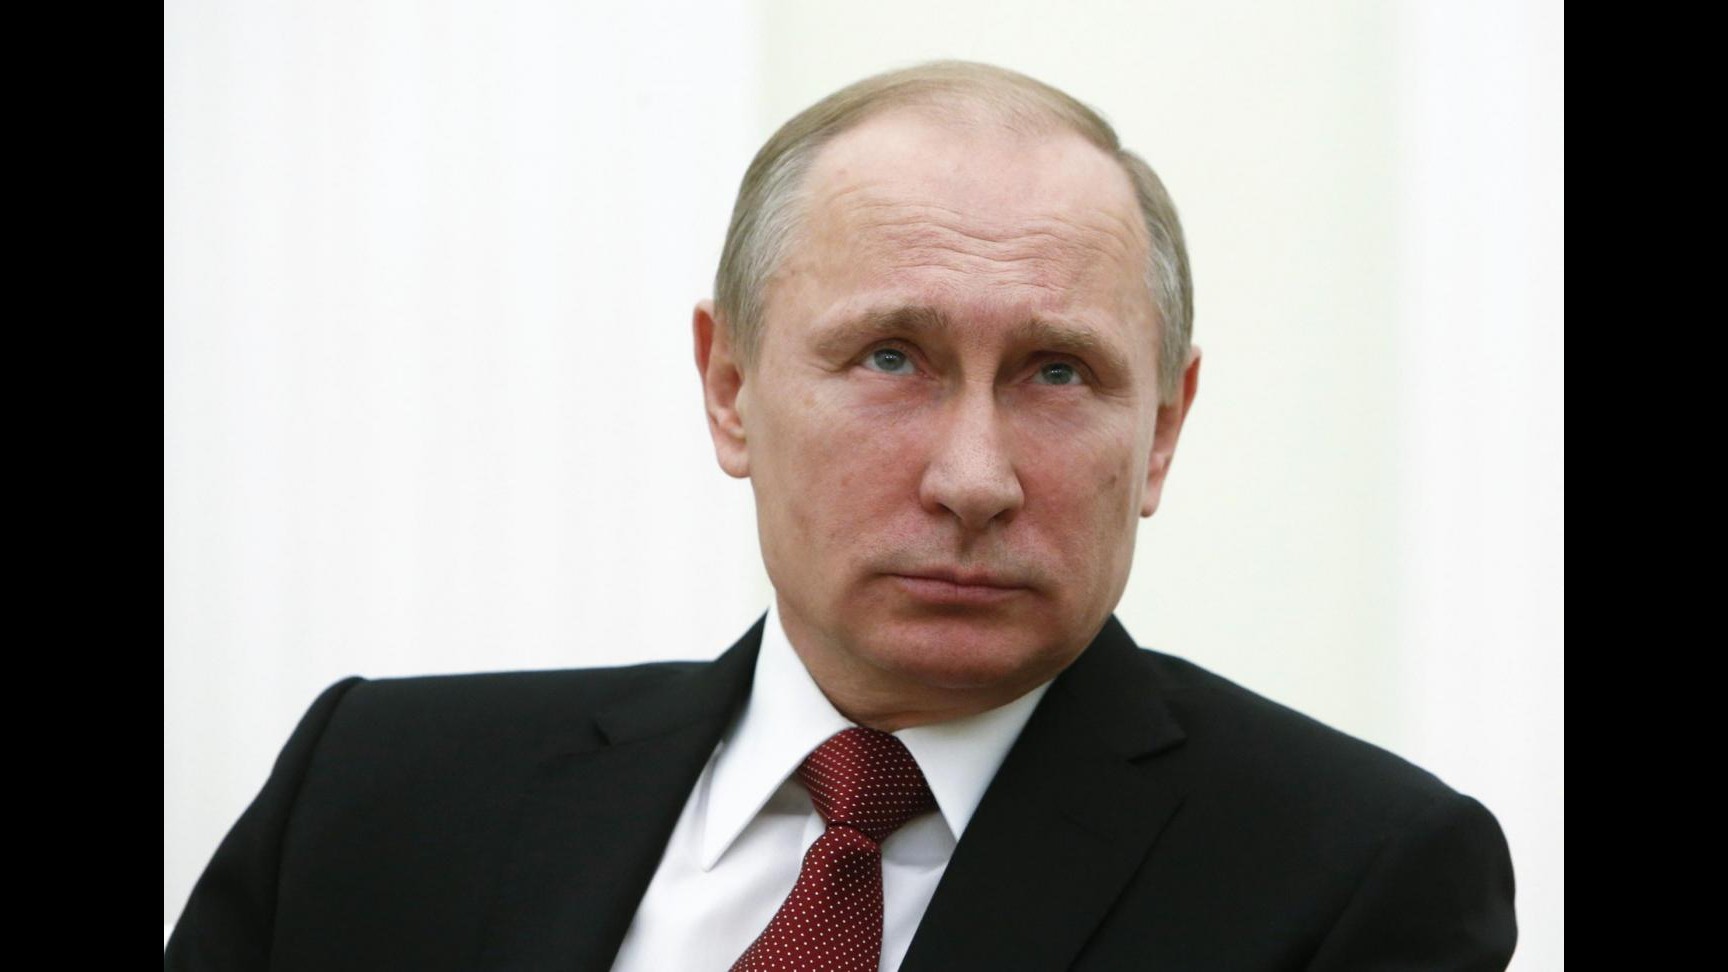 Putin ricompare dopo giorniVoci su nascita figlio, Cremlino smentisce